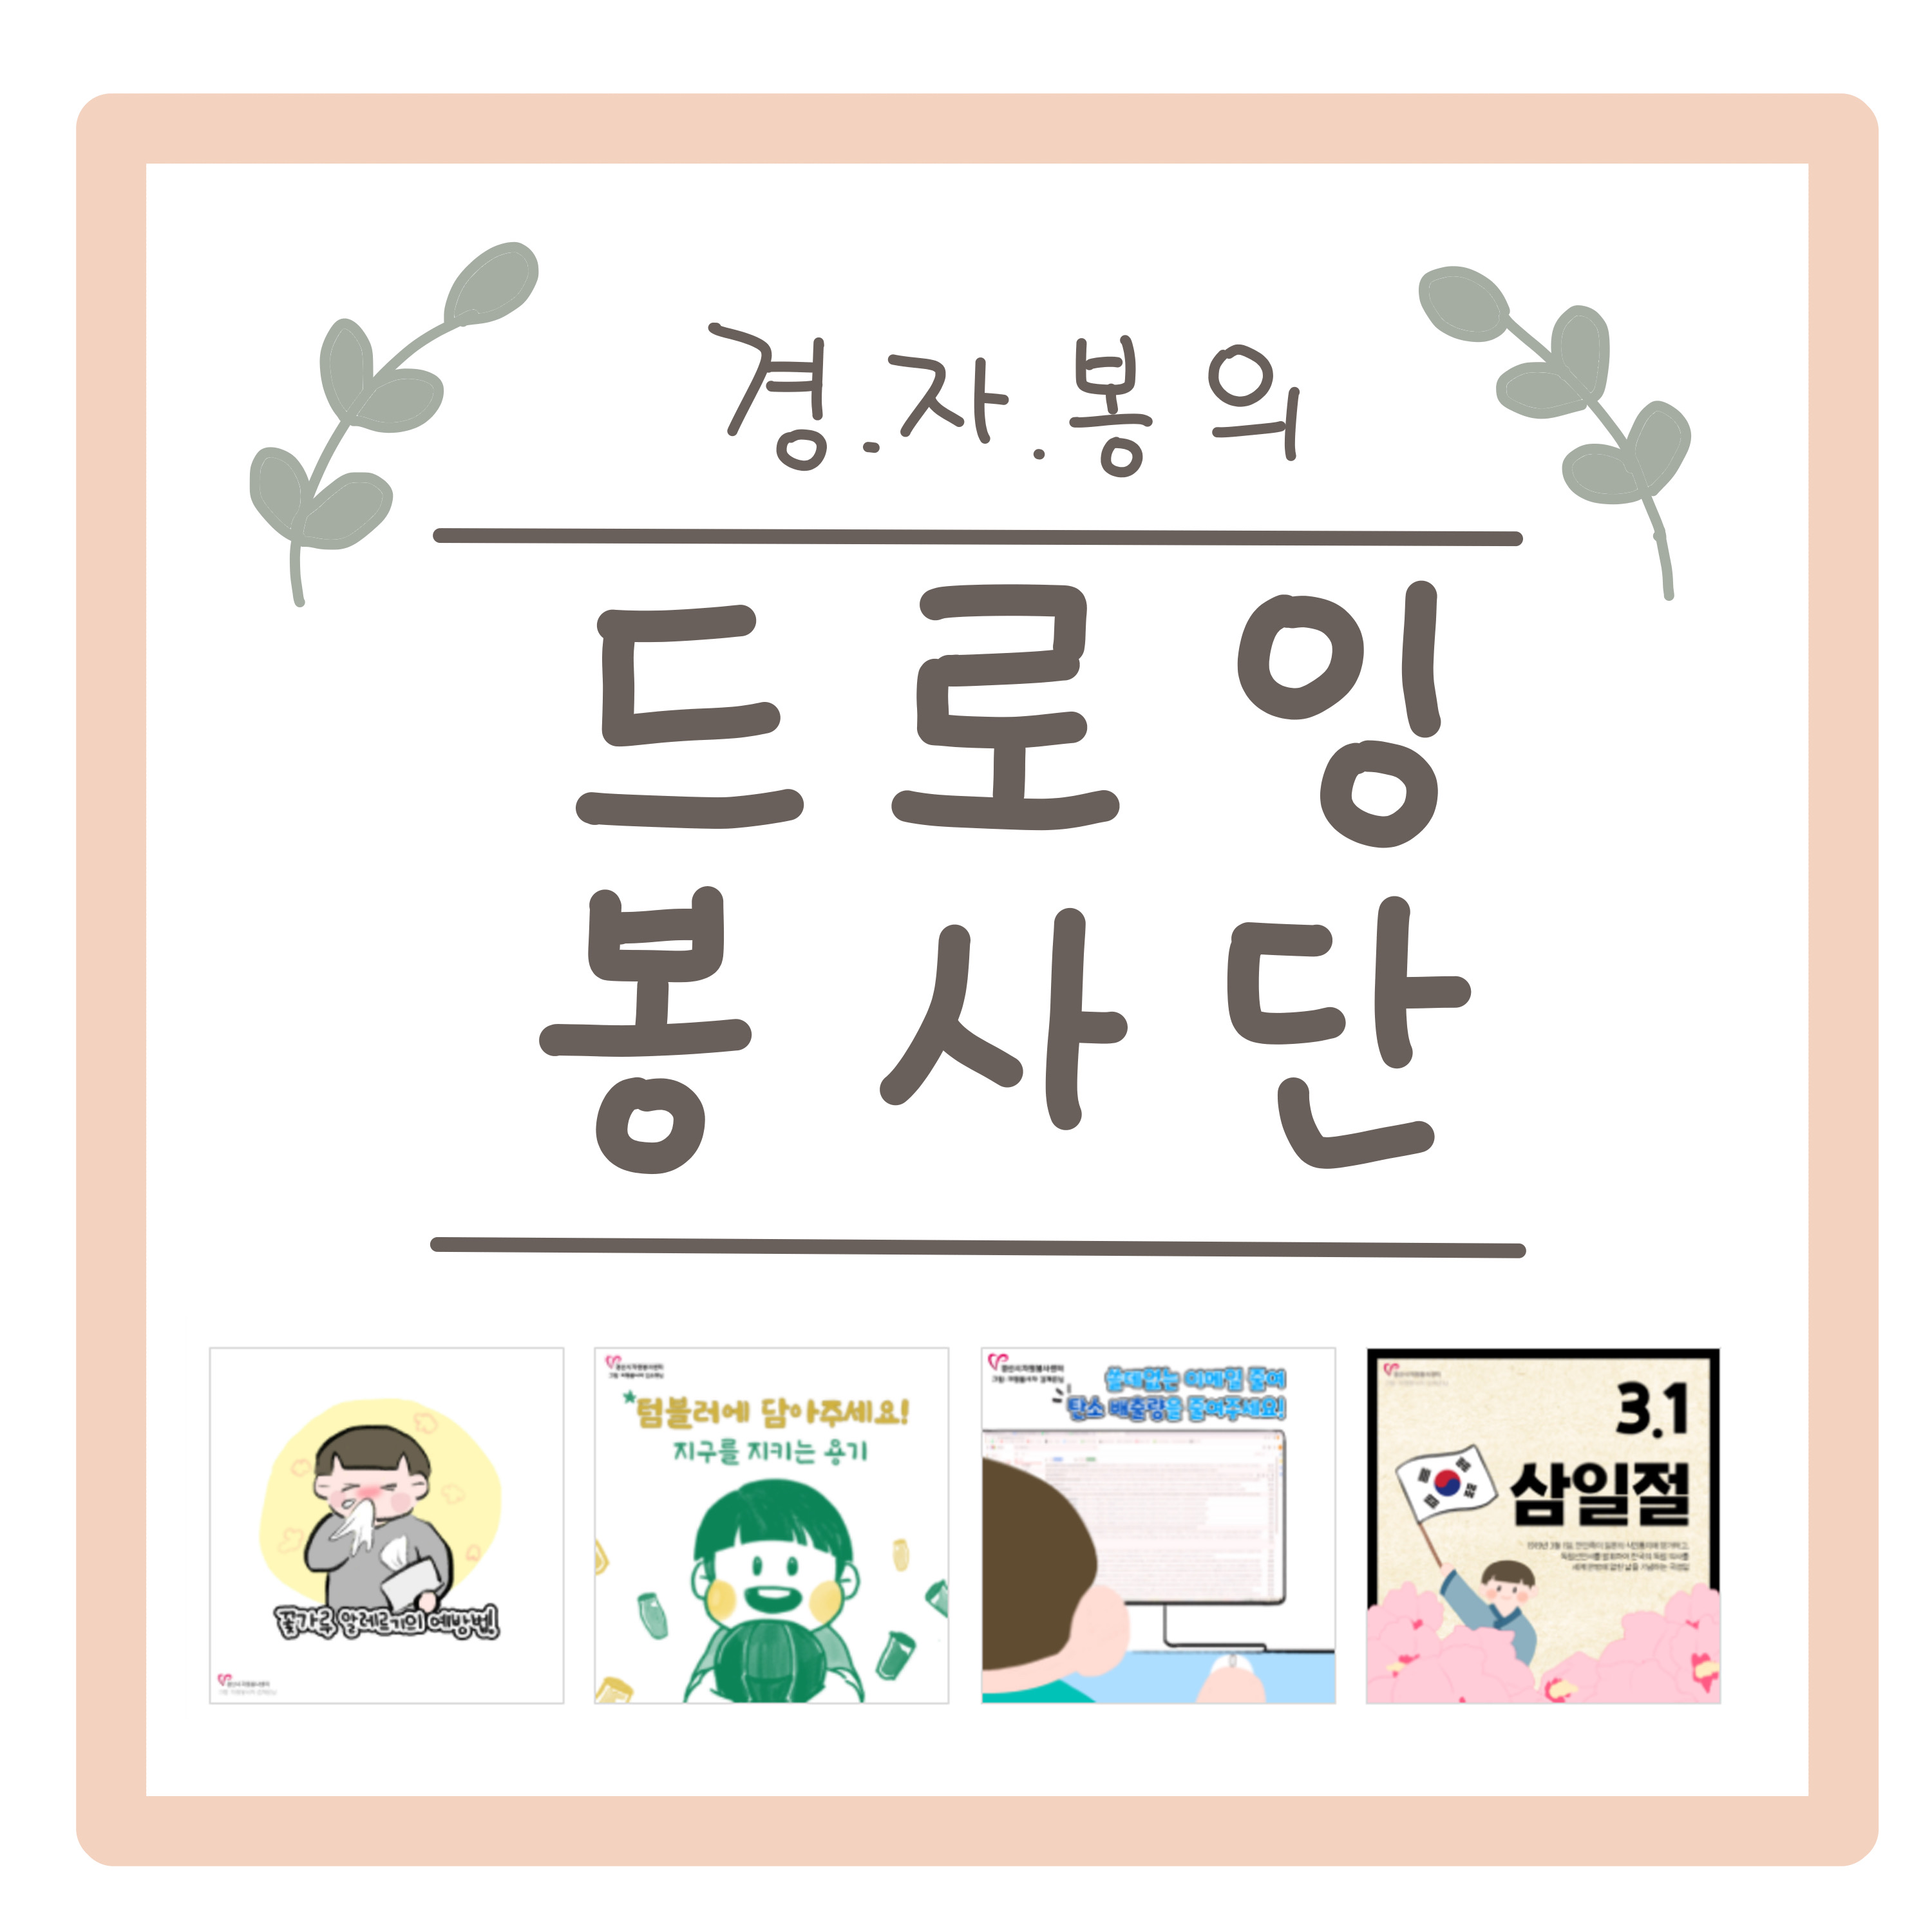 #1 방울(김영) 작가님과 함께하는  자원봉사센터의 발자취